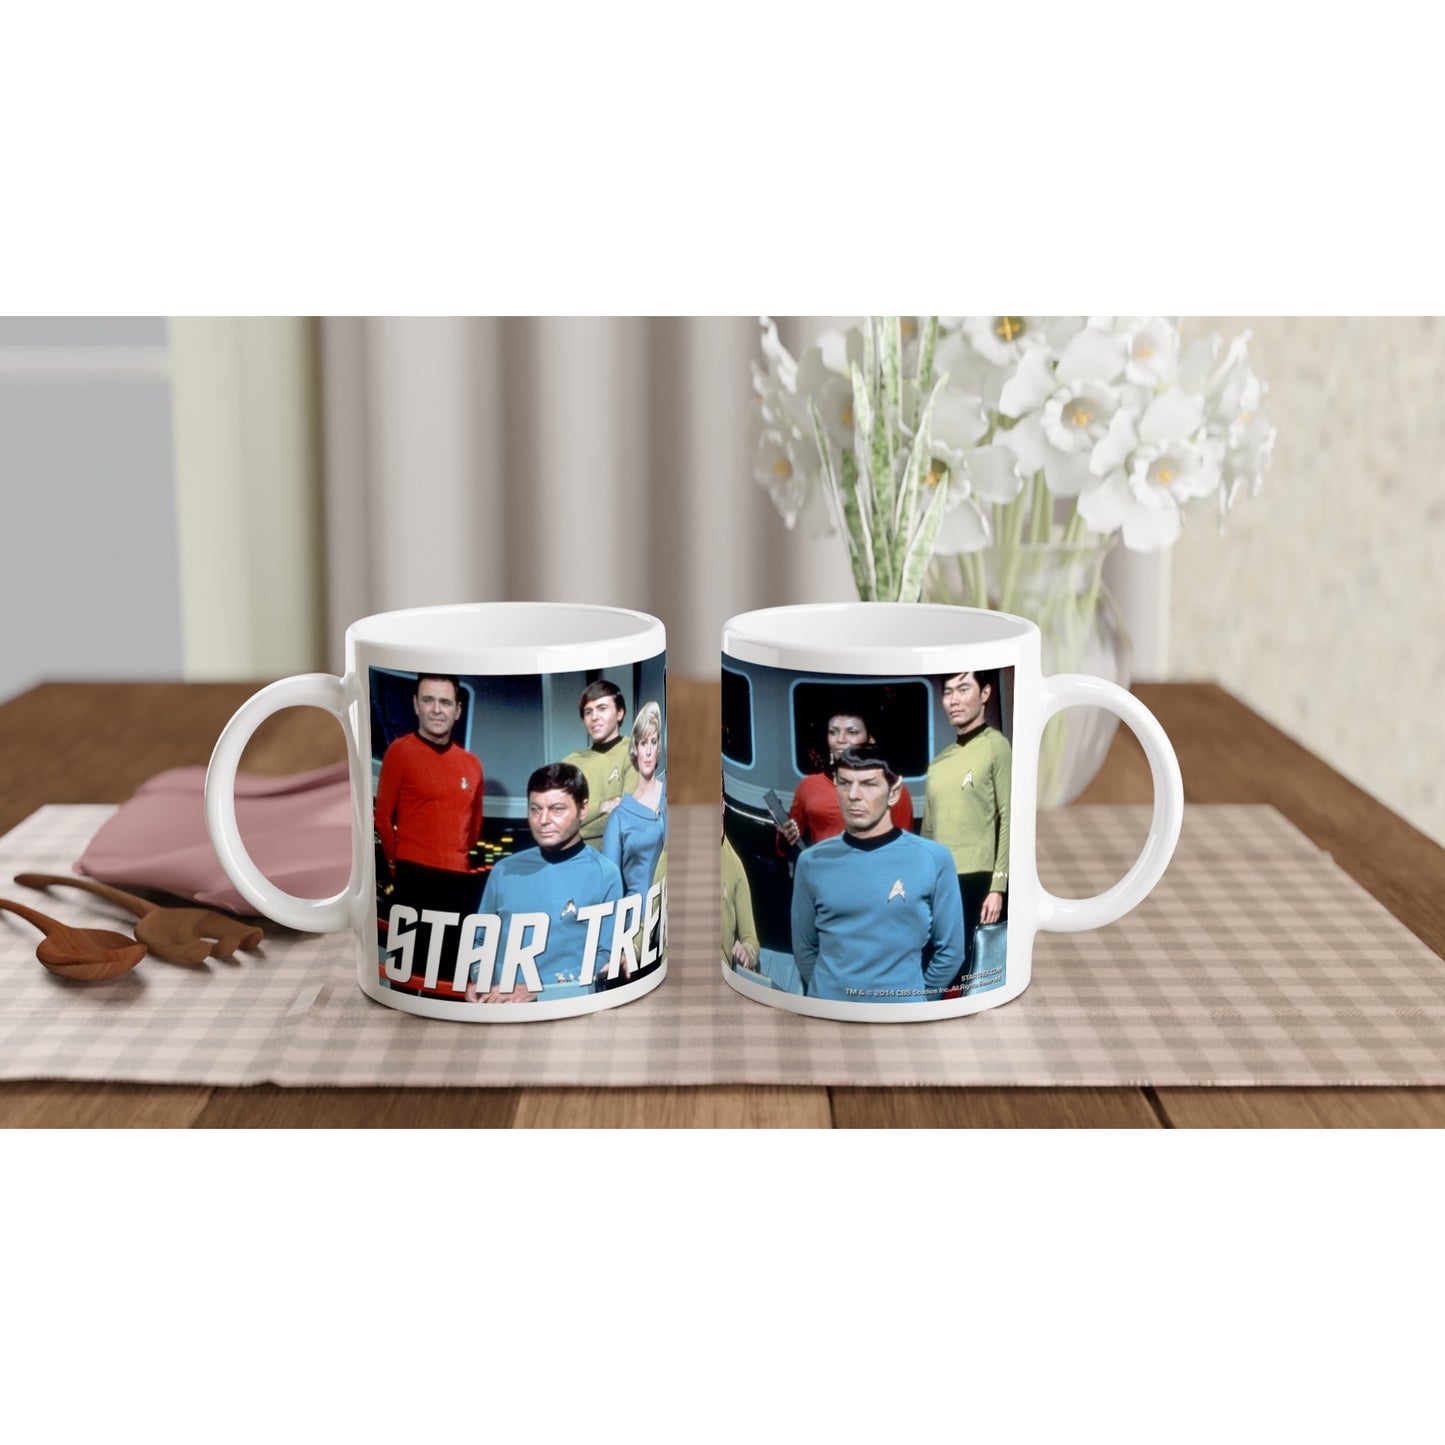 Offizielle Star Trek-Tasse – The Crew – 330 ml, weiße Tasse